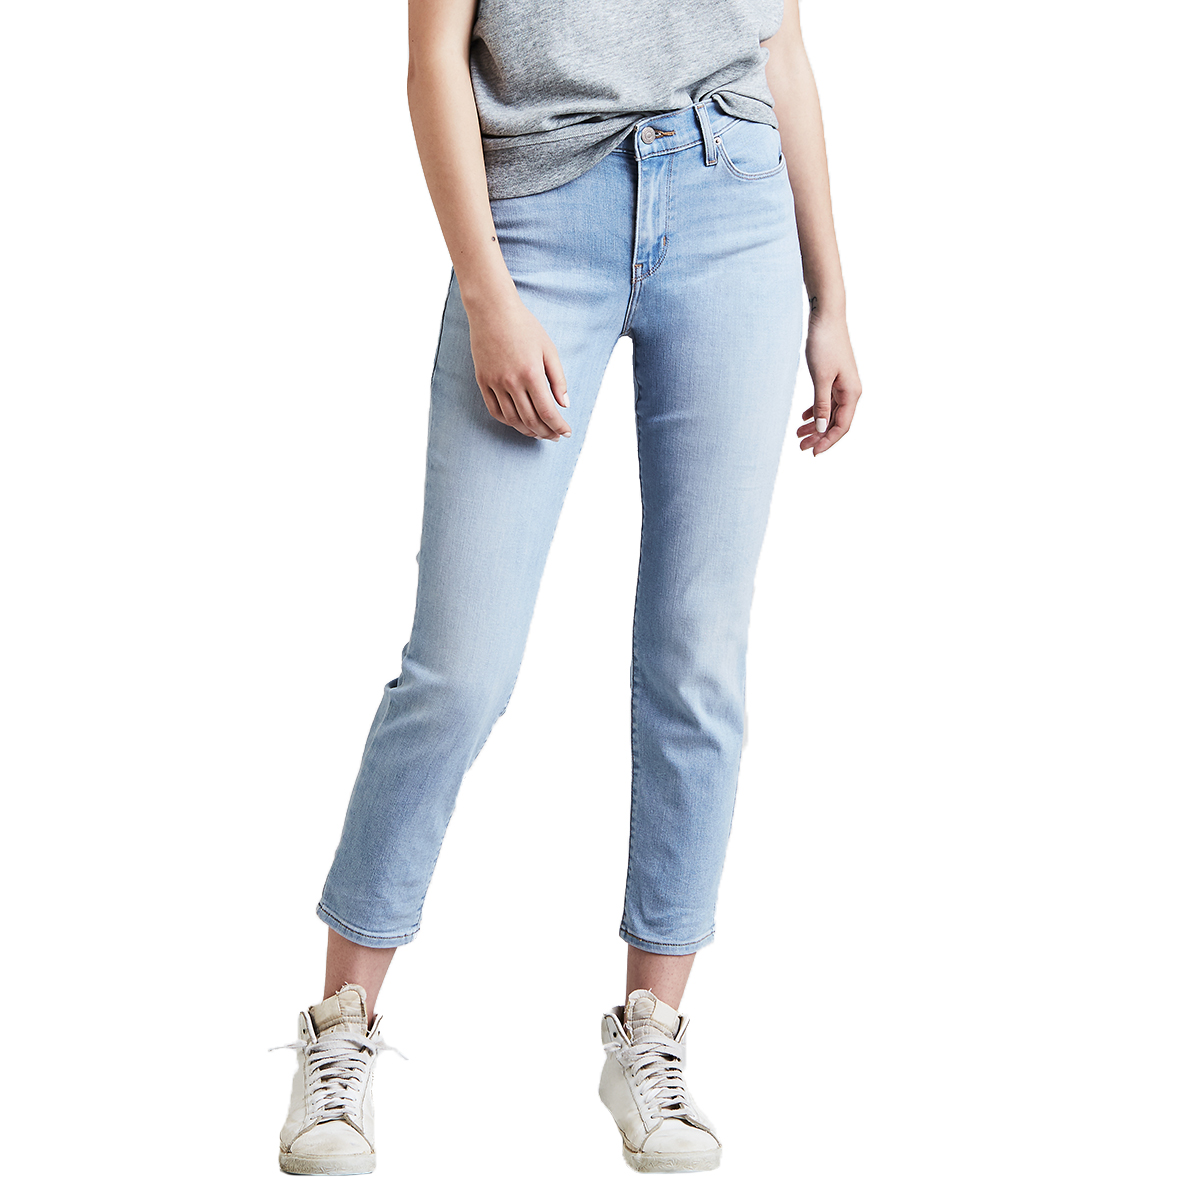 Levi's Women's Classic Crop Jeans - Blue, 8